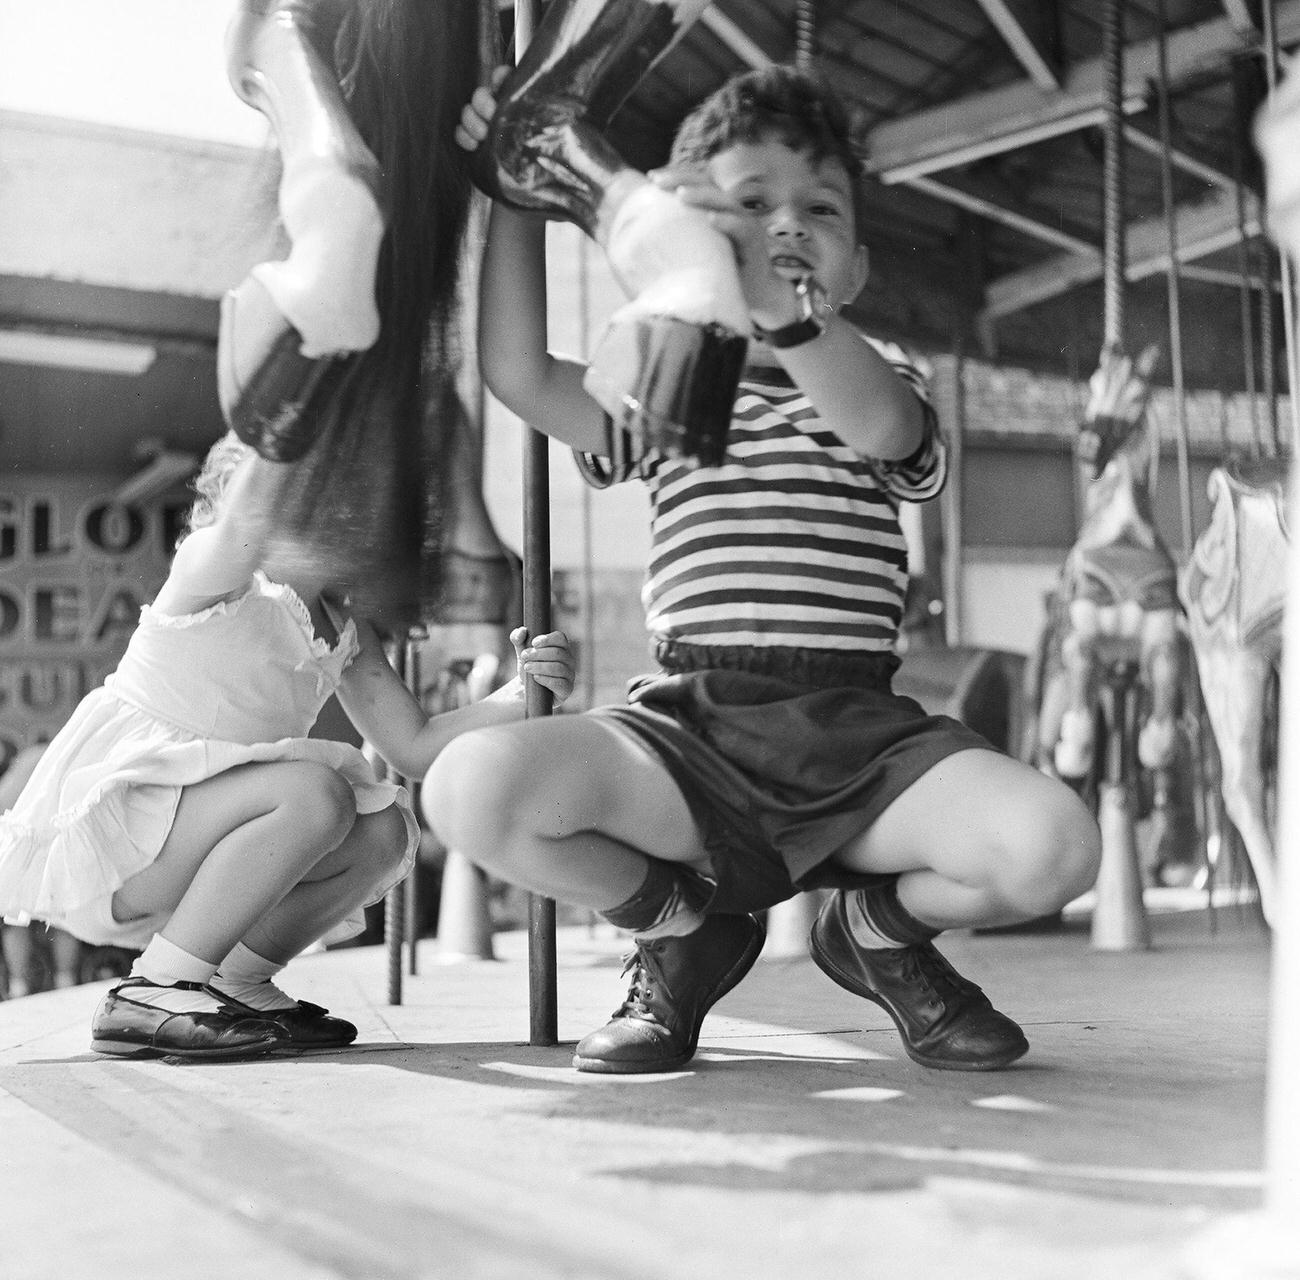 Siblings On Carousel At Amusement Park, 1948